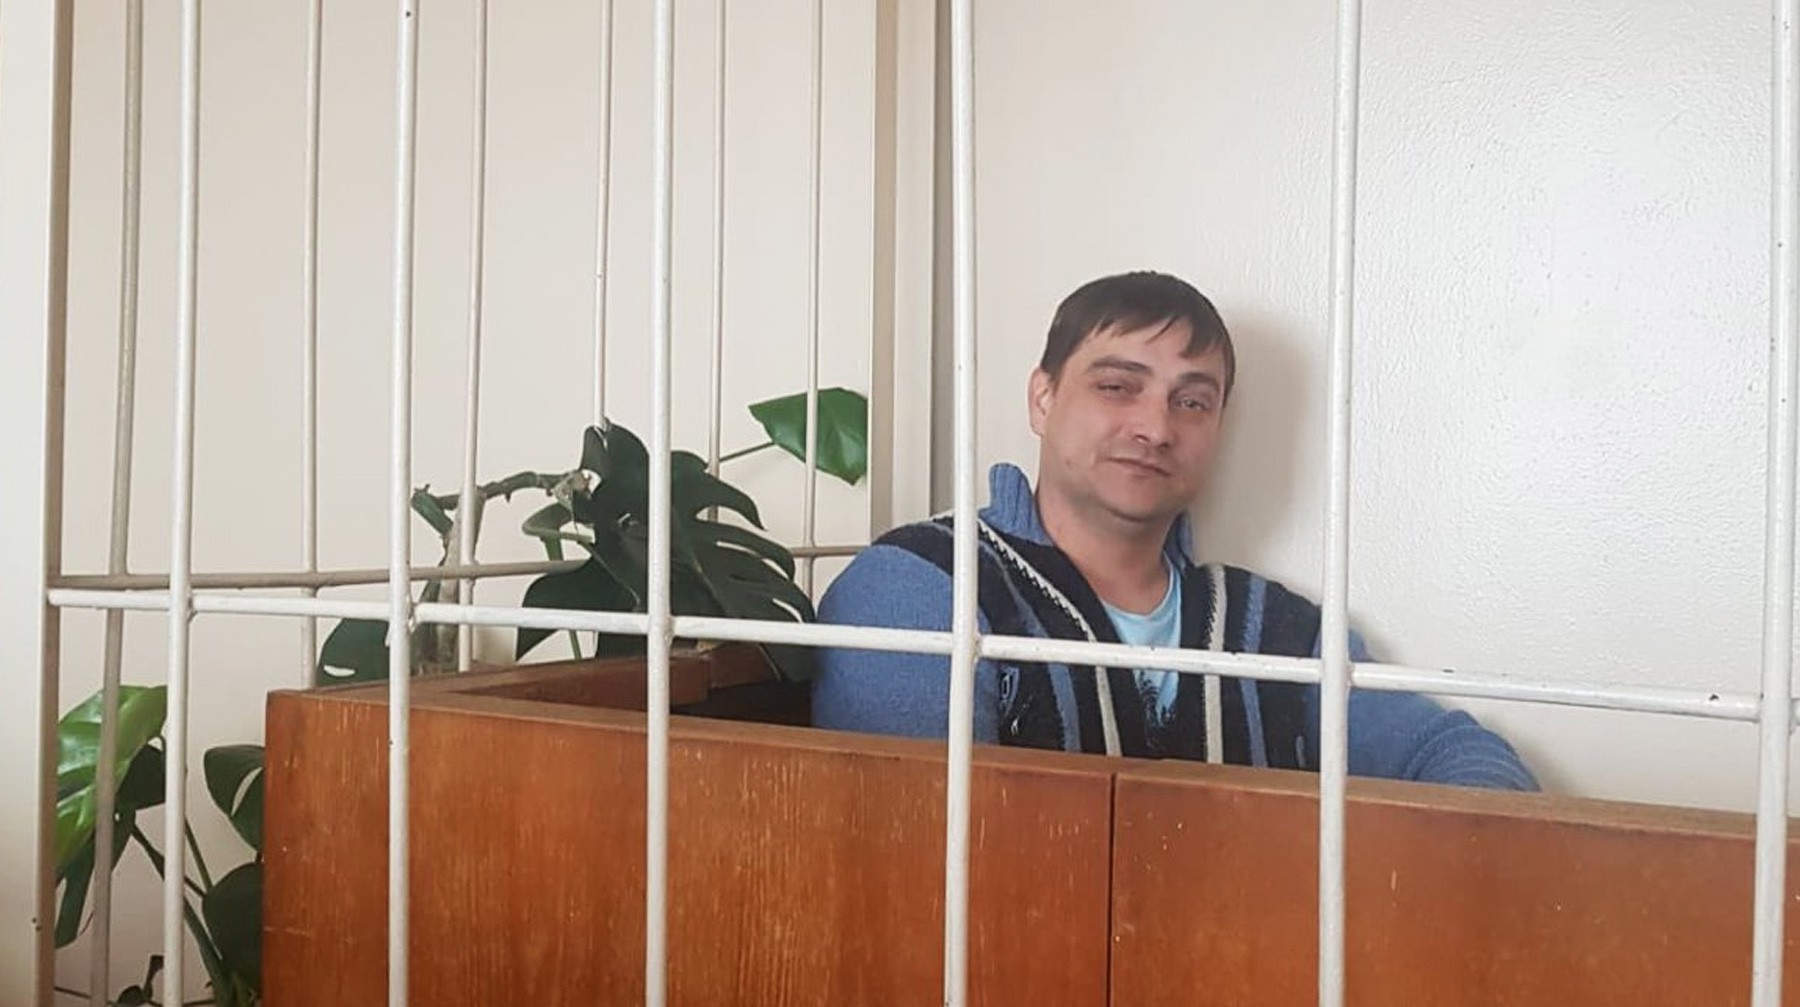 Dailystorm - «Квинтэссенция подлости»: коломенского активиста осудили на два месяца домашнего ареста